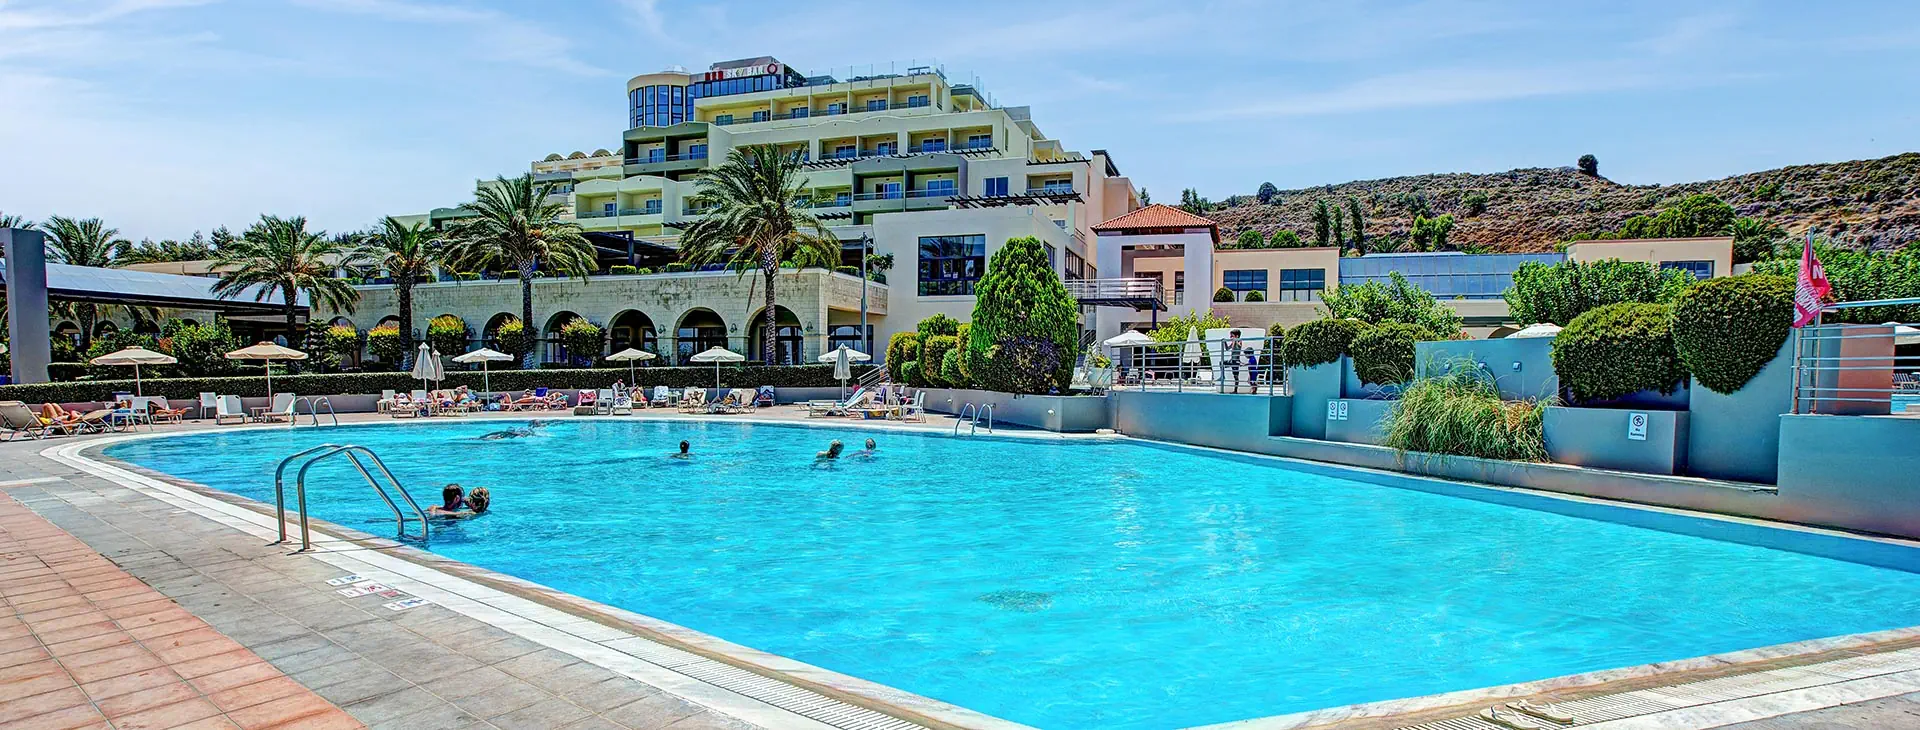 Grecja Kos Psalidi Kipriotis Panorama Hotel and Suites